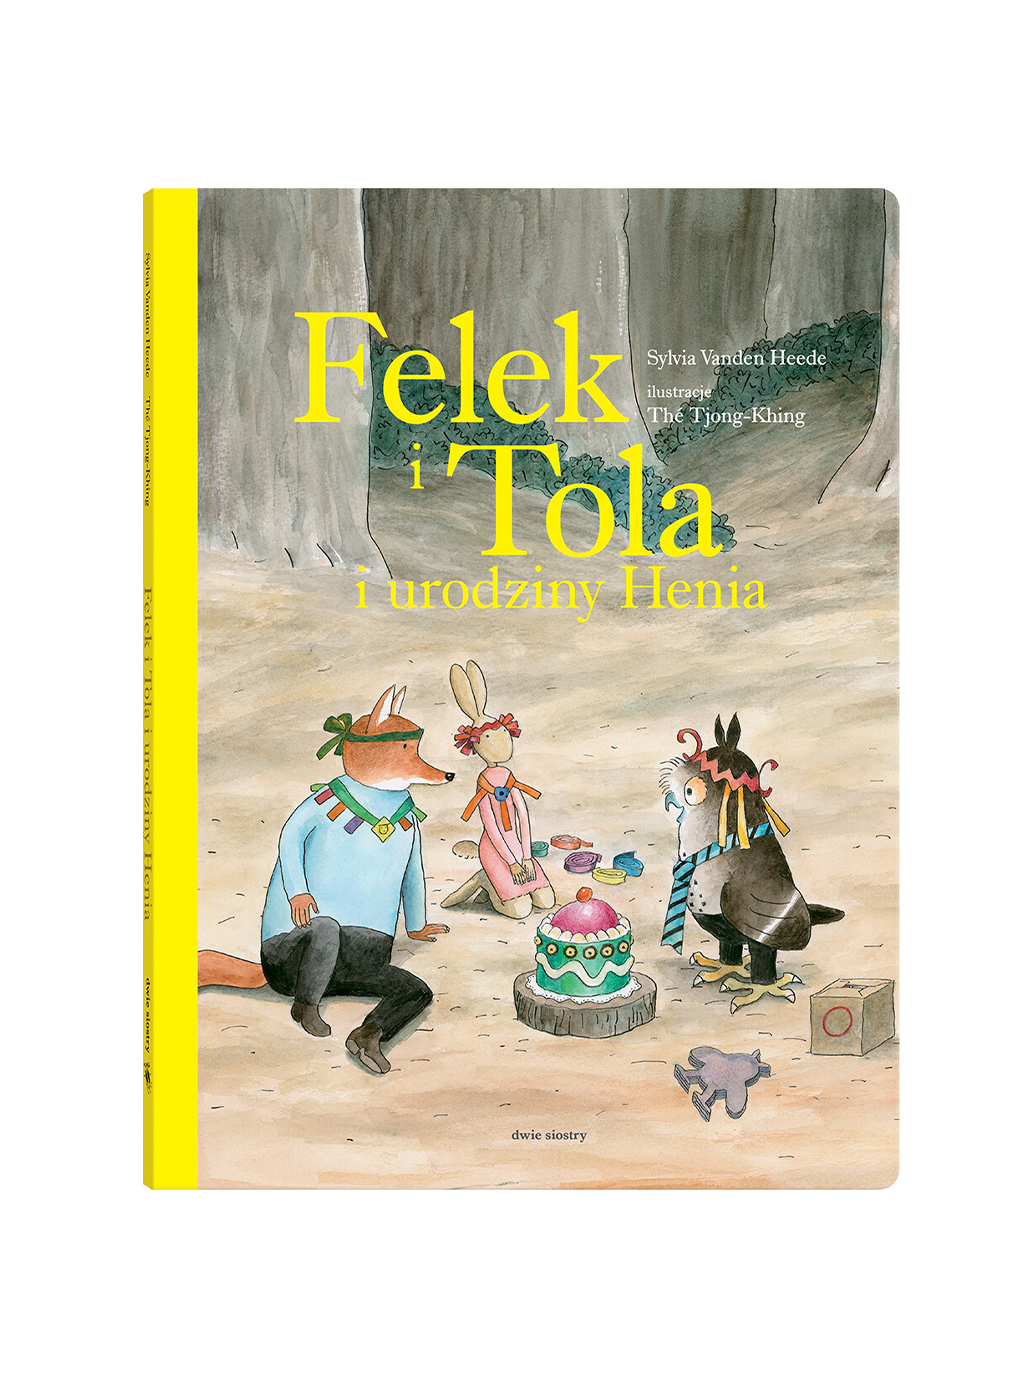 Felek e Tola e il compleanno di Henio